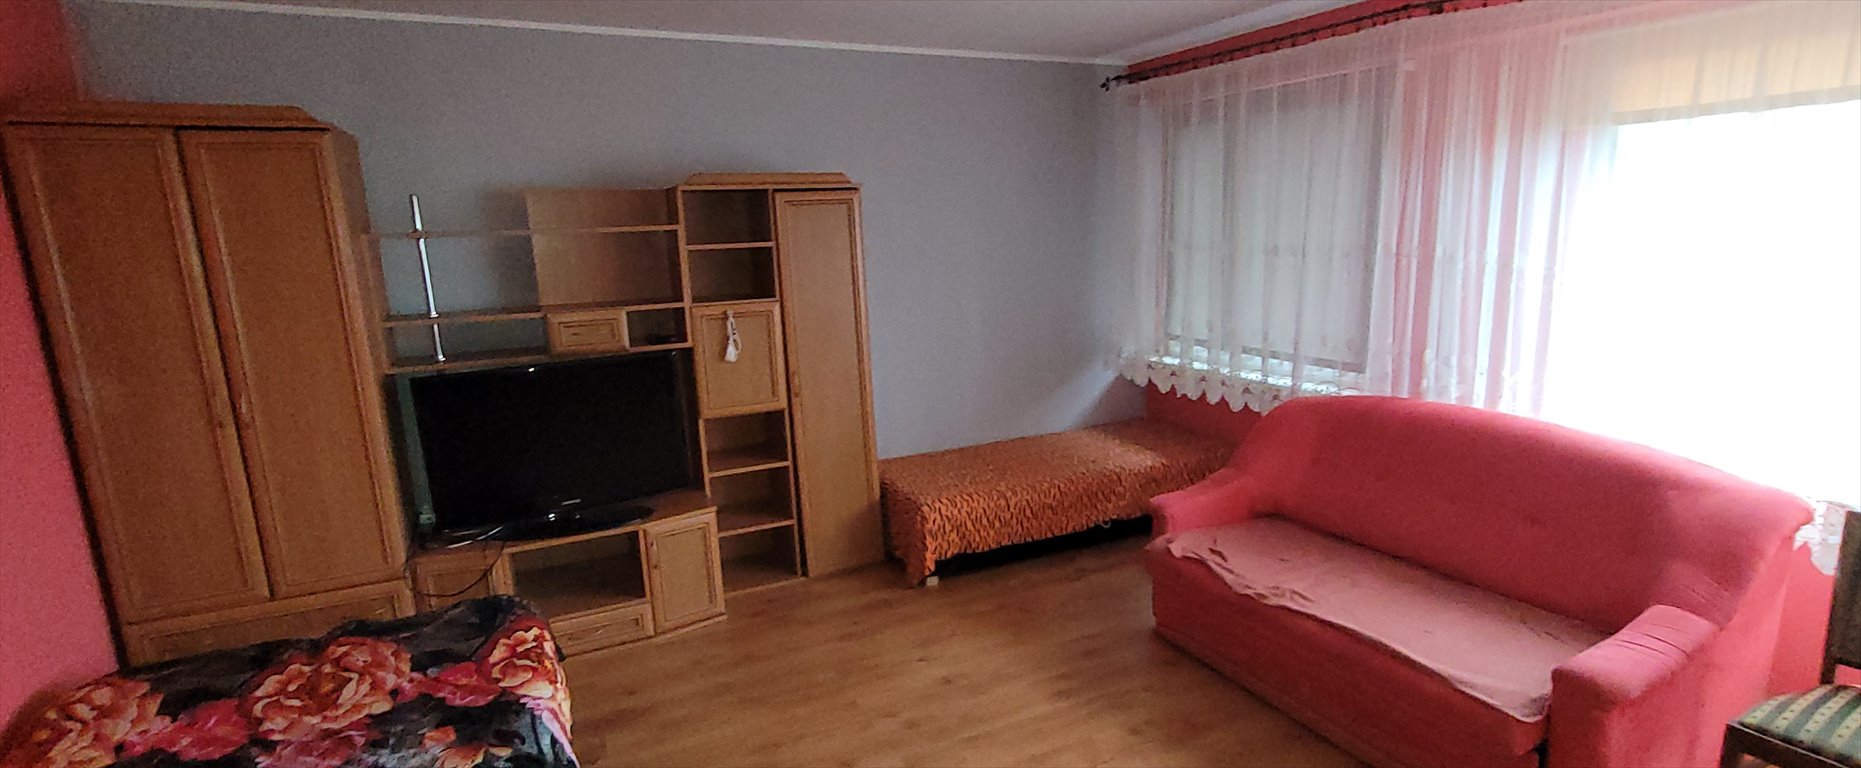 Mieszkanie trzypokojowe na sprzedaż Trzemeszno, Piastowska  58m2 Foto 3